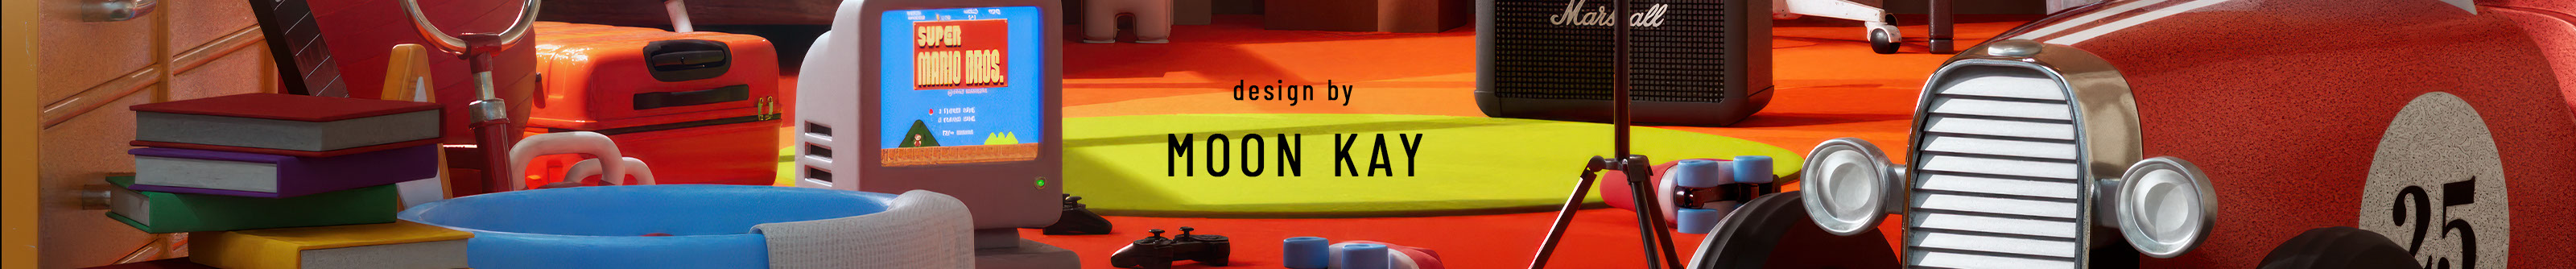 Moon Kays profilbanner